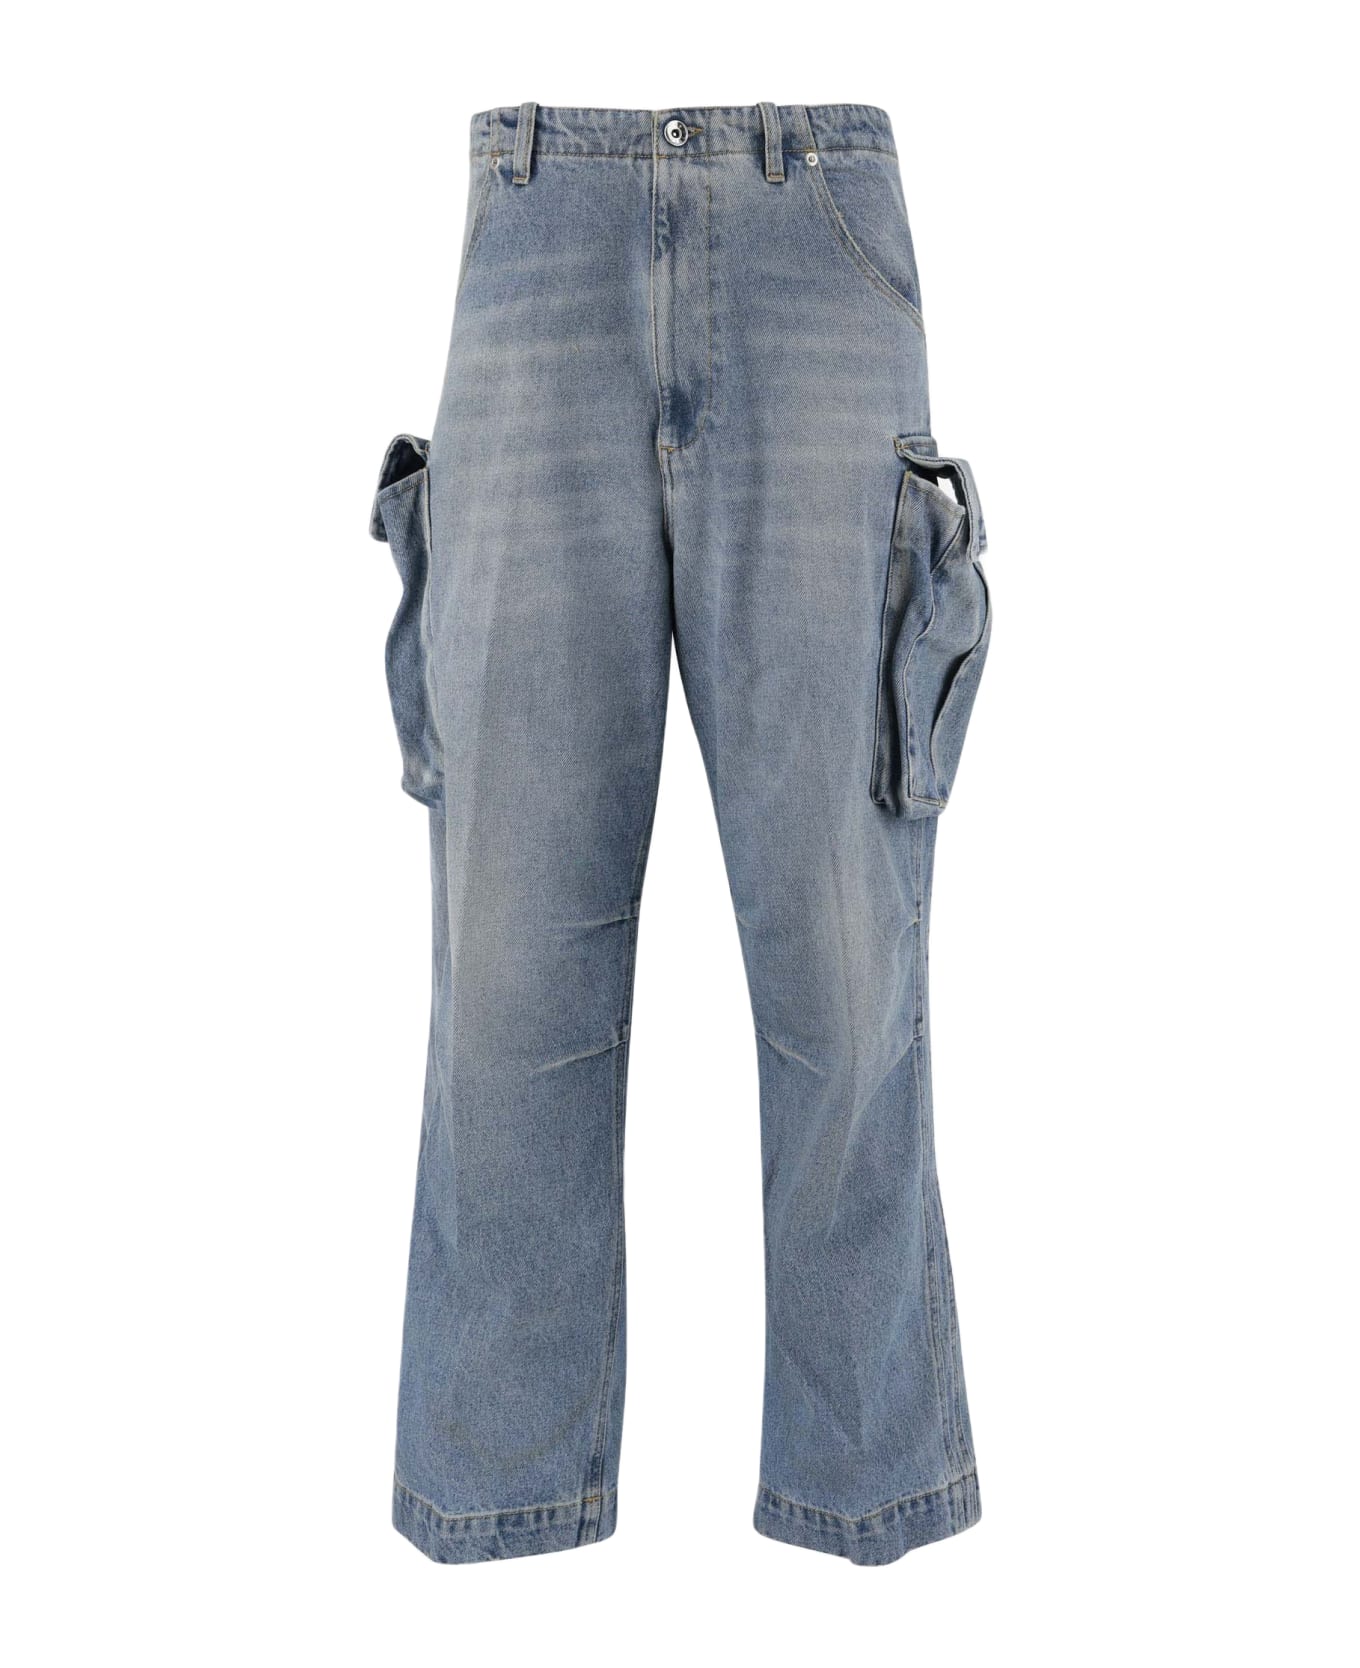 1989 Studio Multi-pocket Jeans - Denim